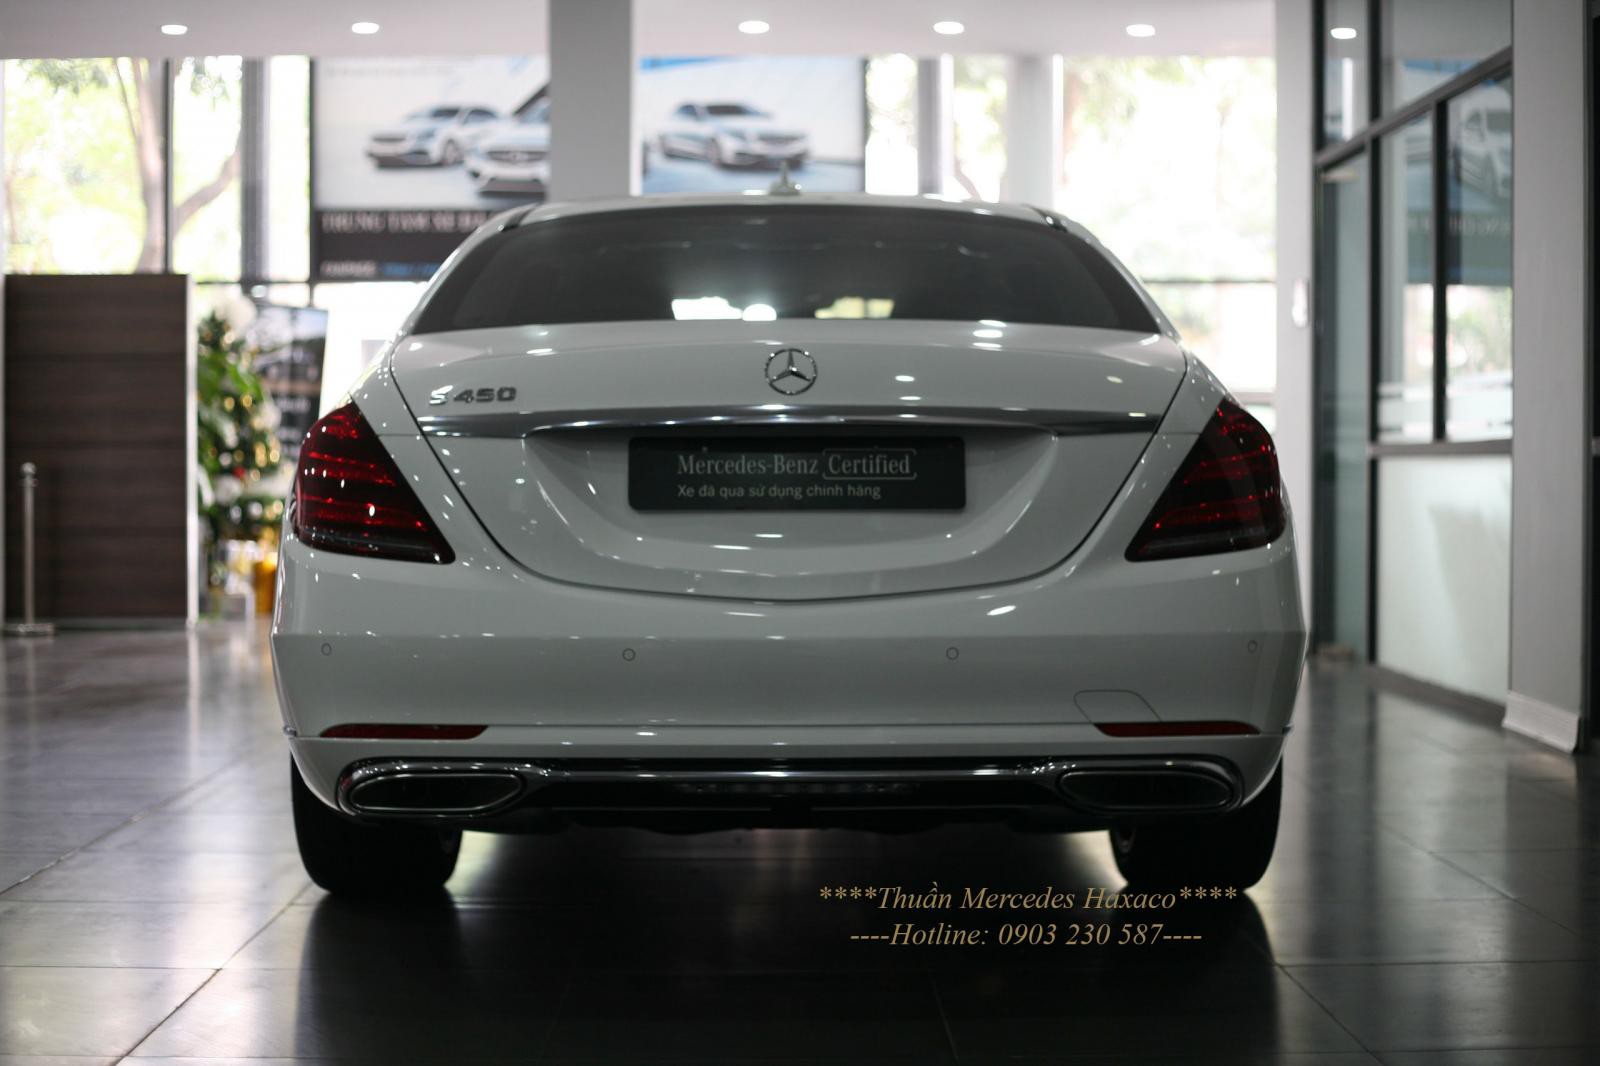 Đại lý Mercedes Haxaco bán xe S450 Luxury trắng siêu lướt ĐK 2021 SX 2020, bảo hành đến 2024